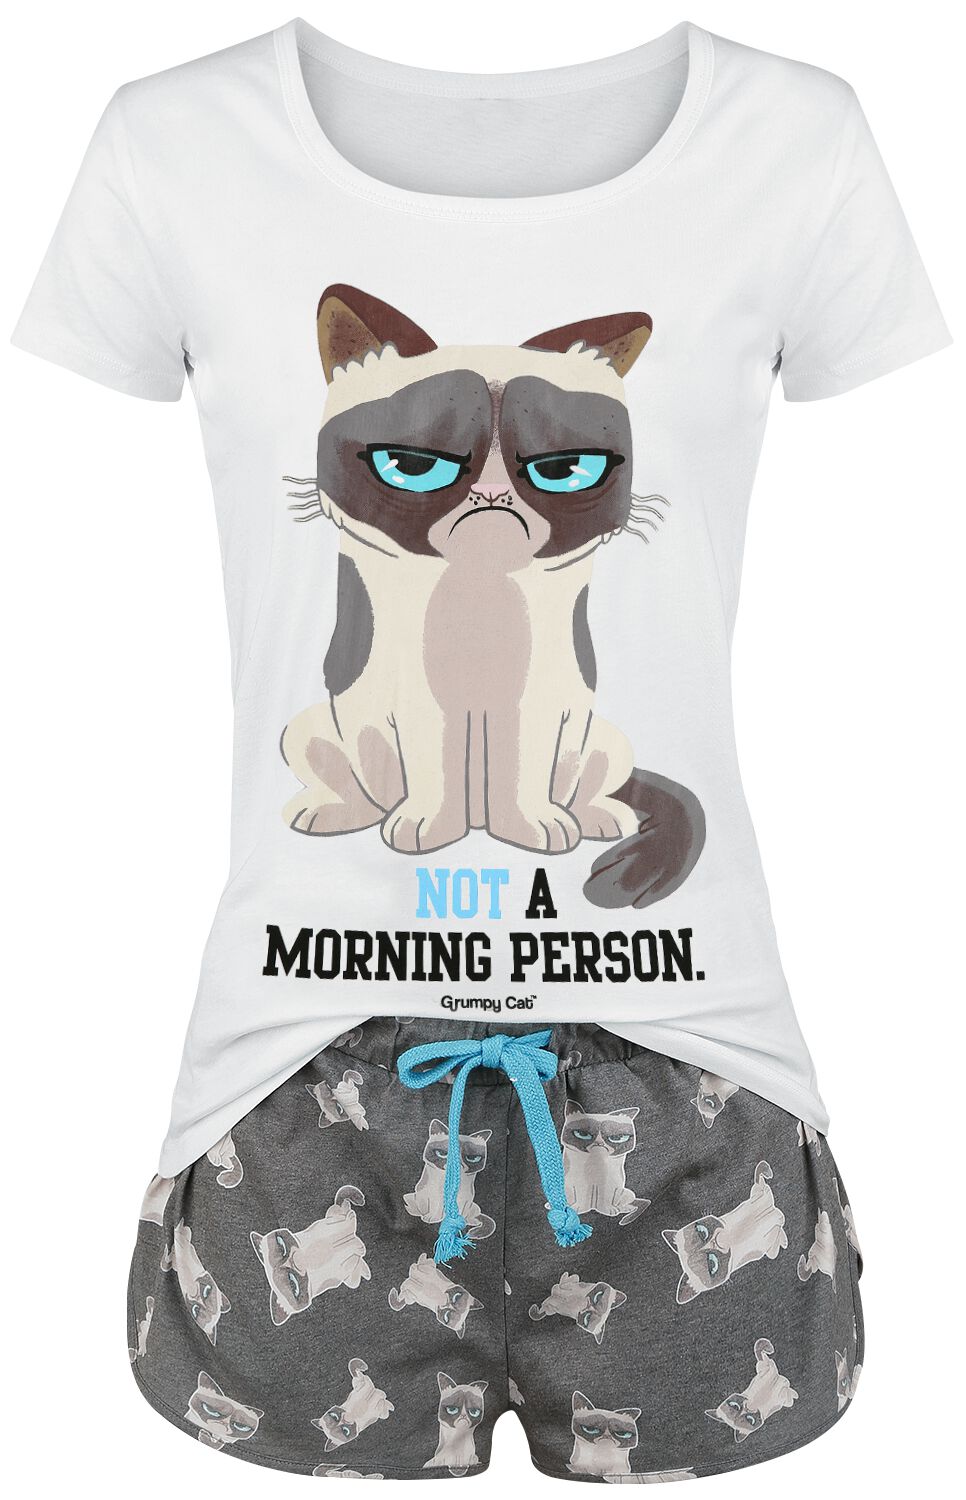 Grumpy Cat Schlafanzug - Not A Morning Person! - S bis 3XL - für Damen - Größe S - grau/weiß  - EMP exklusives Merchandise! von Grumpy Cat